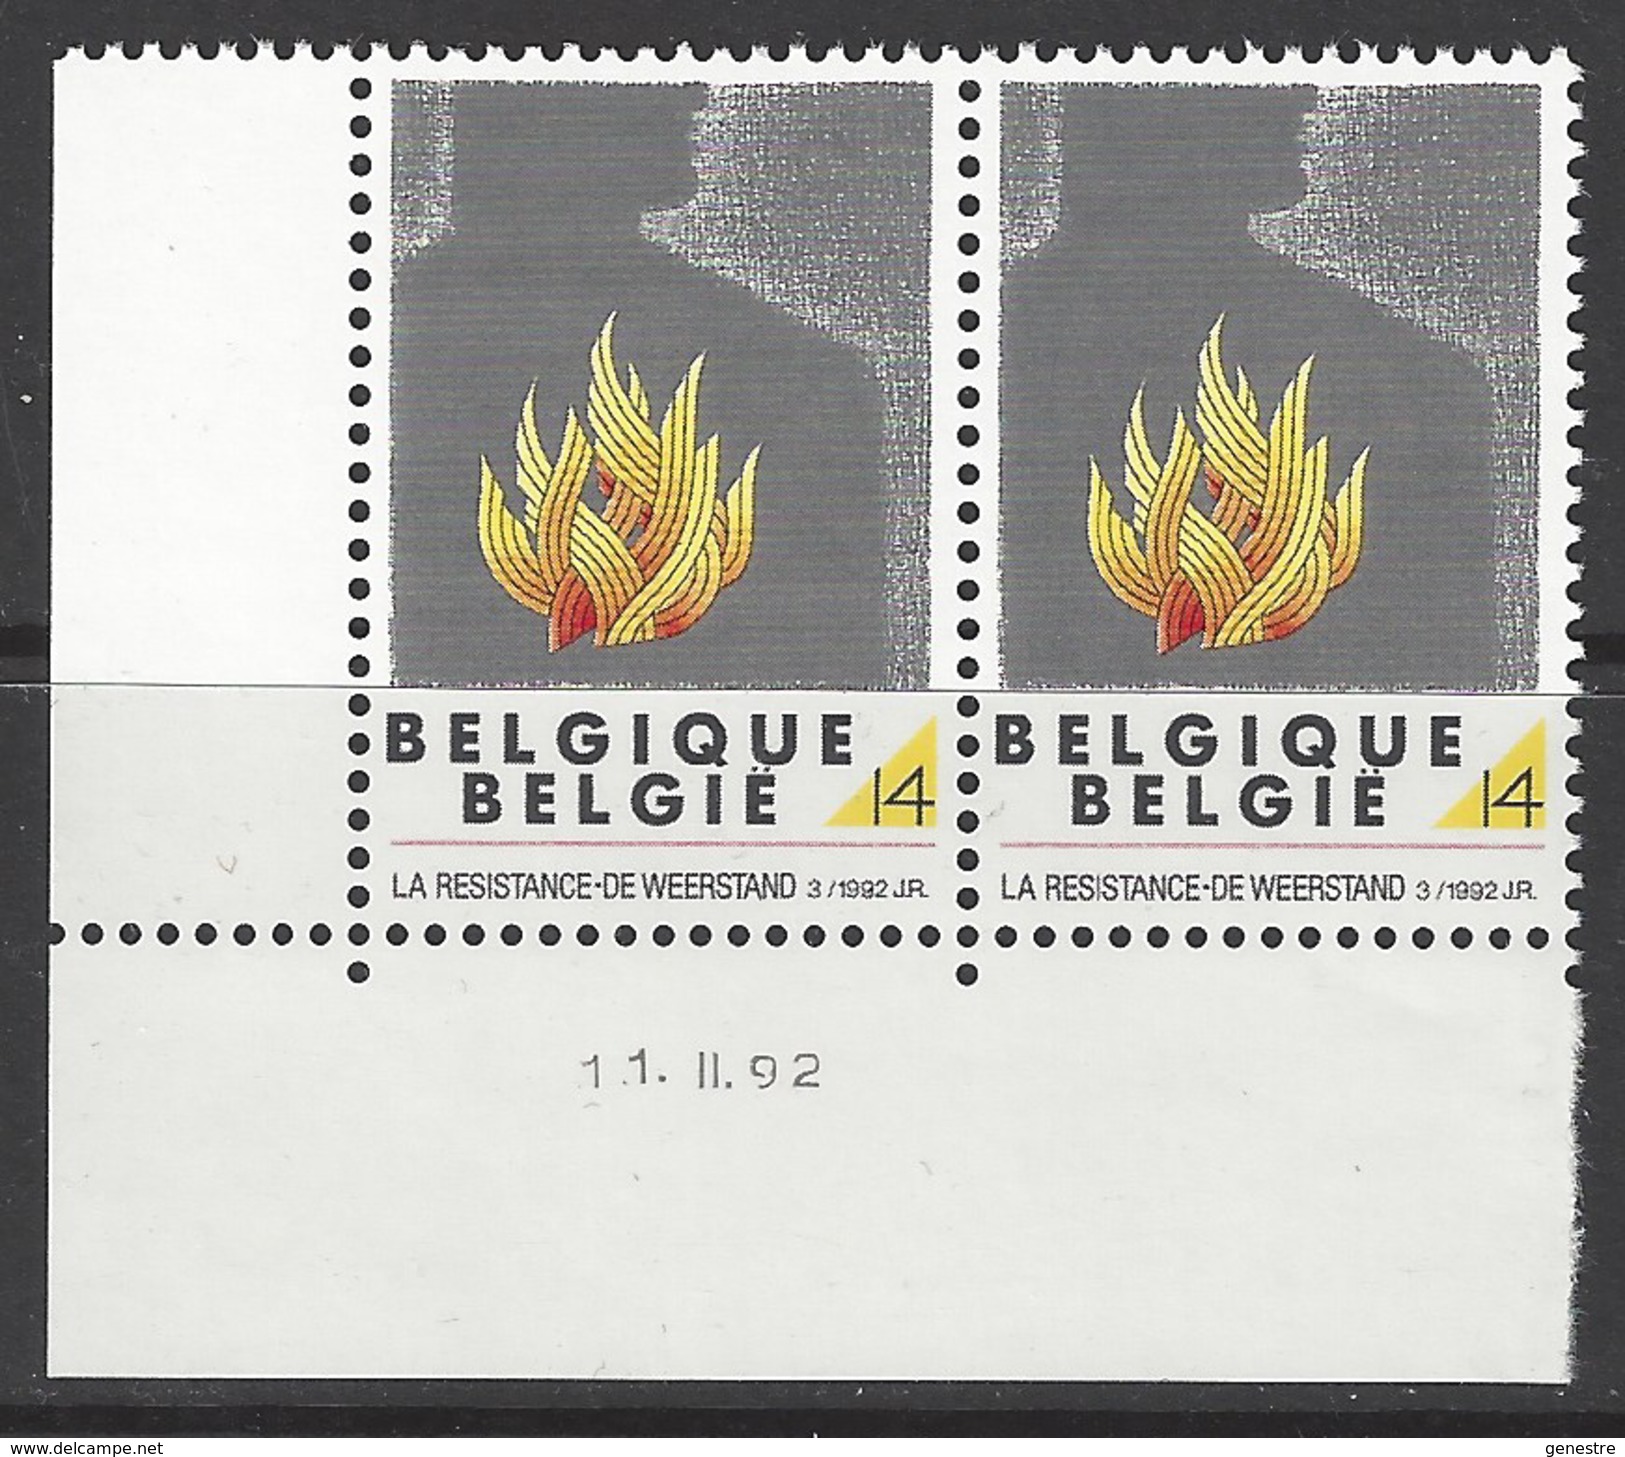 Belgique COB 2444 ** (MNH) - Date 11.II.92 - Coins Datés